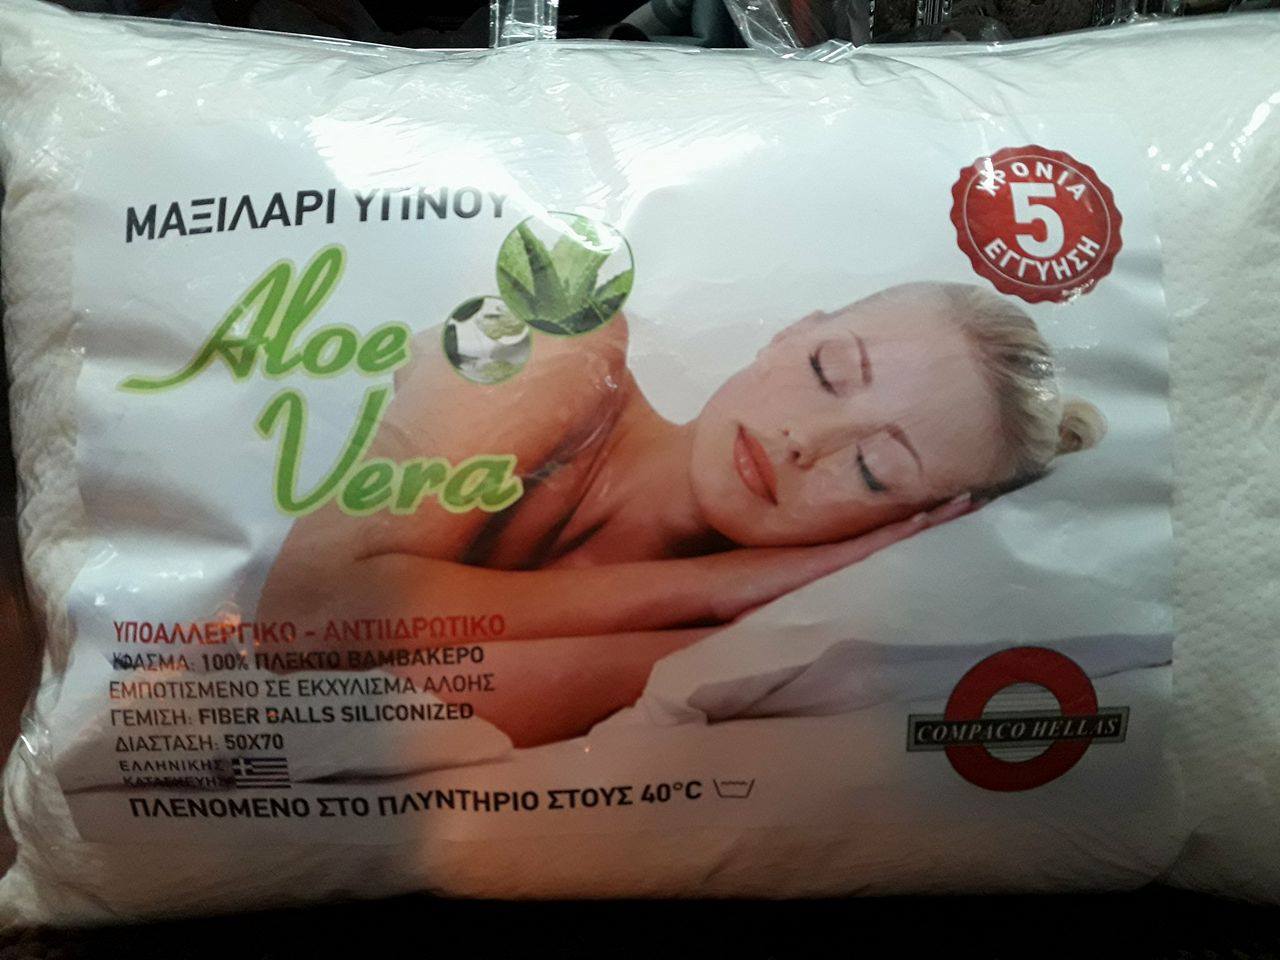 Ξενοδοχειακό Μαξιλάρι Ύπνου 50x70 Aloe Vera